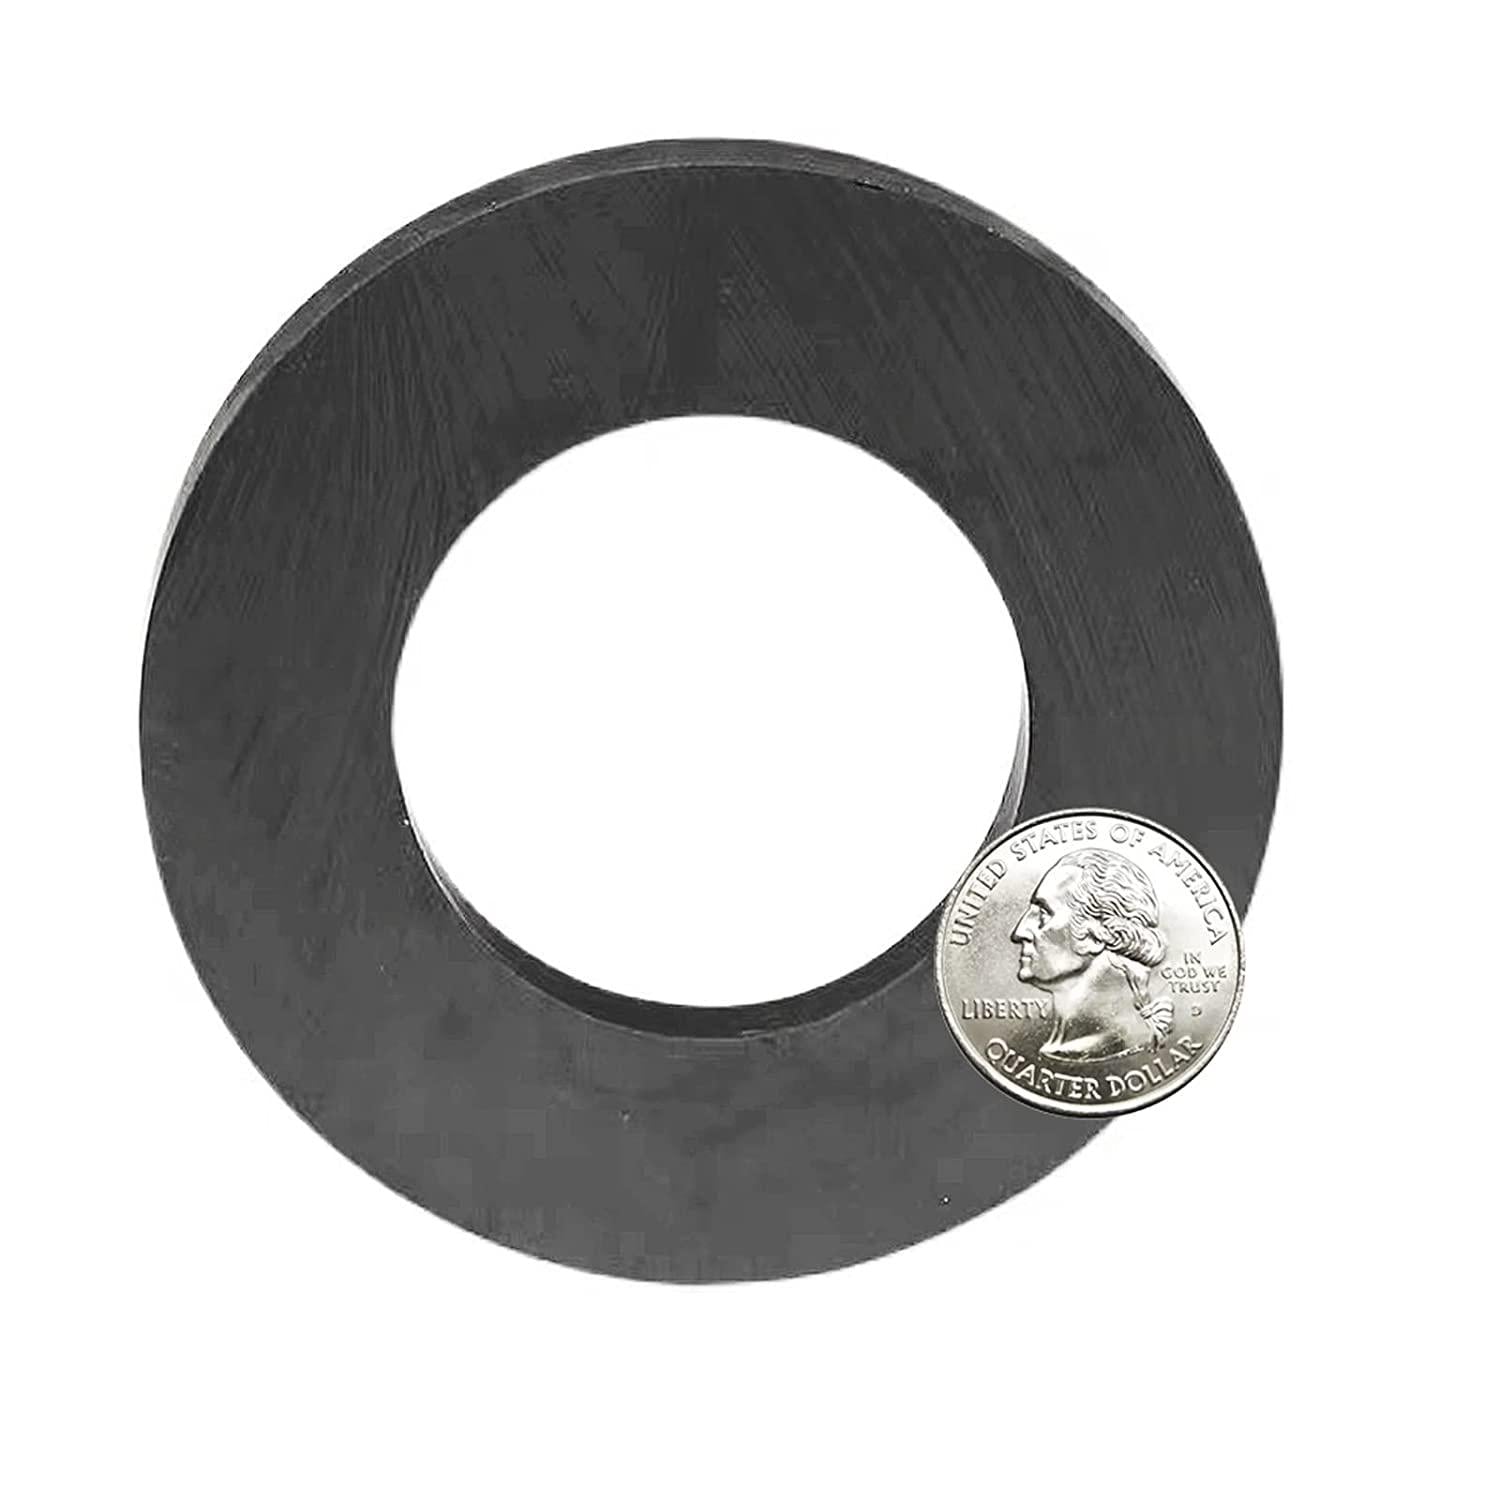 AOMAG, Ferrite Ring Magnet, 4In Dia, Ceramic for Science Experiment